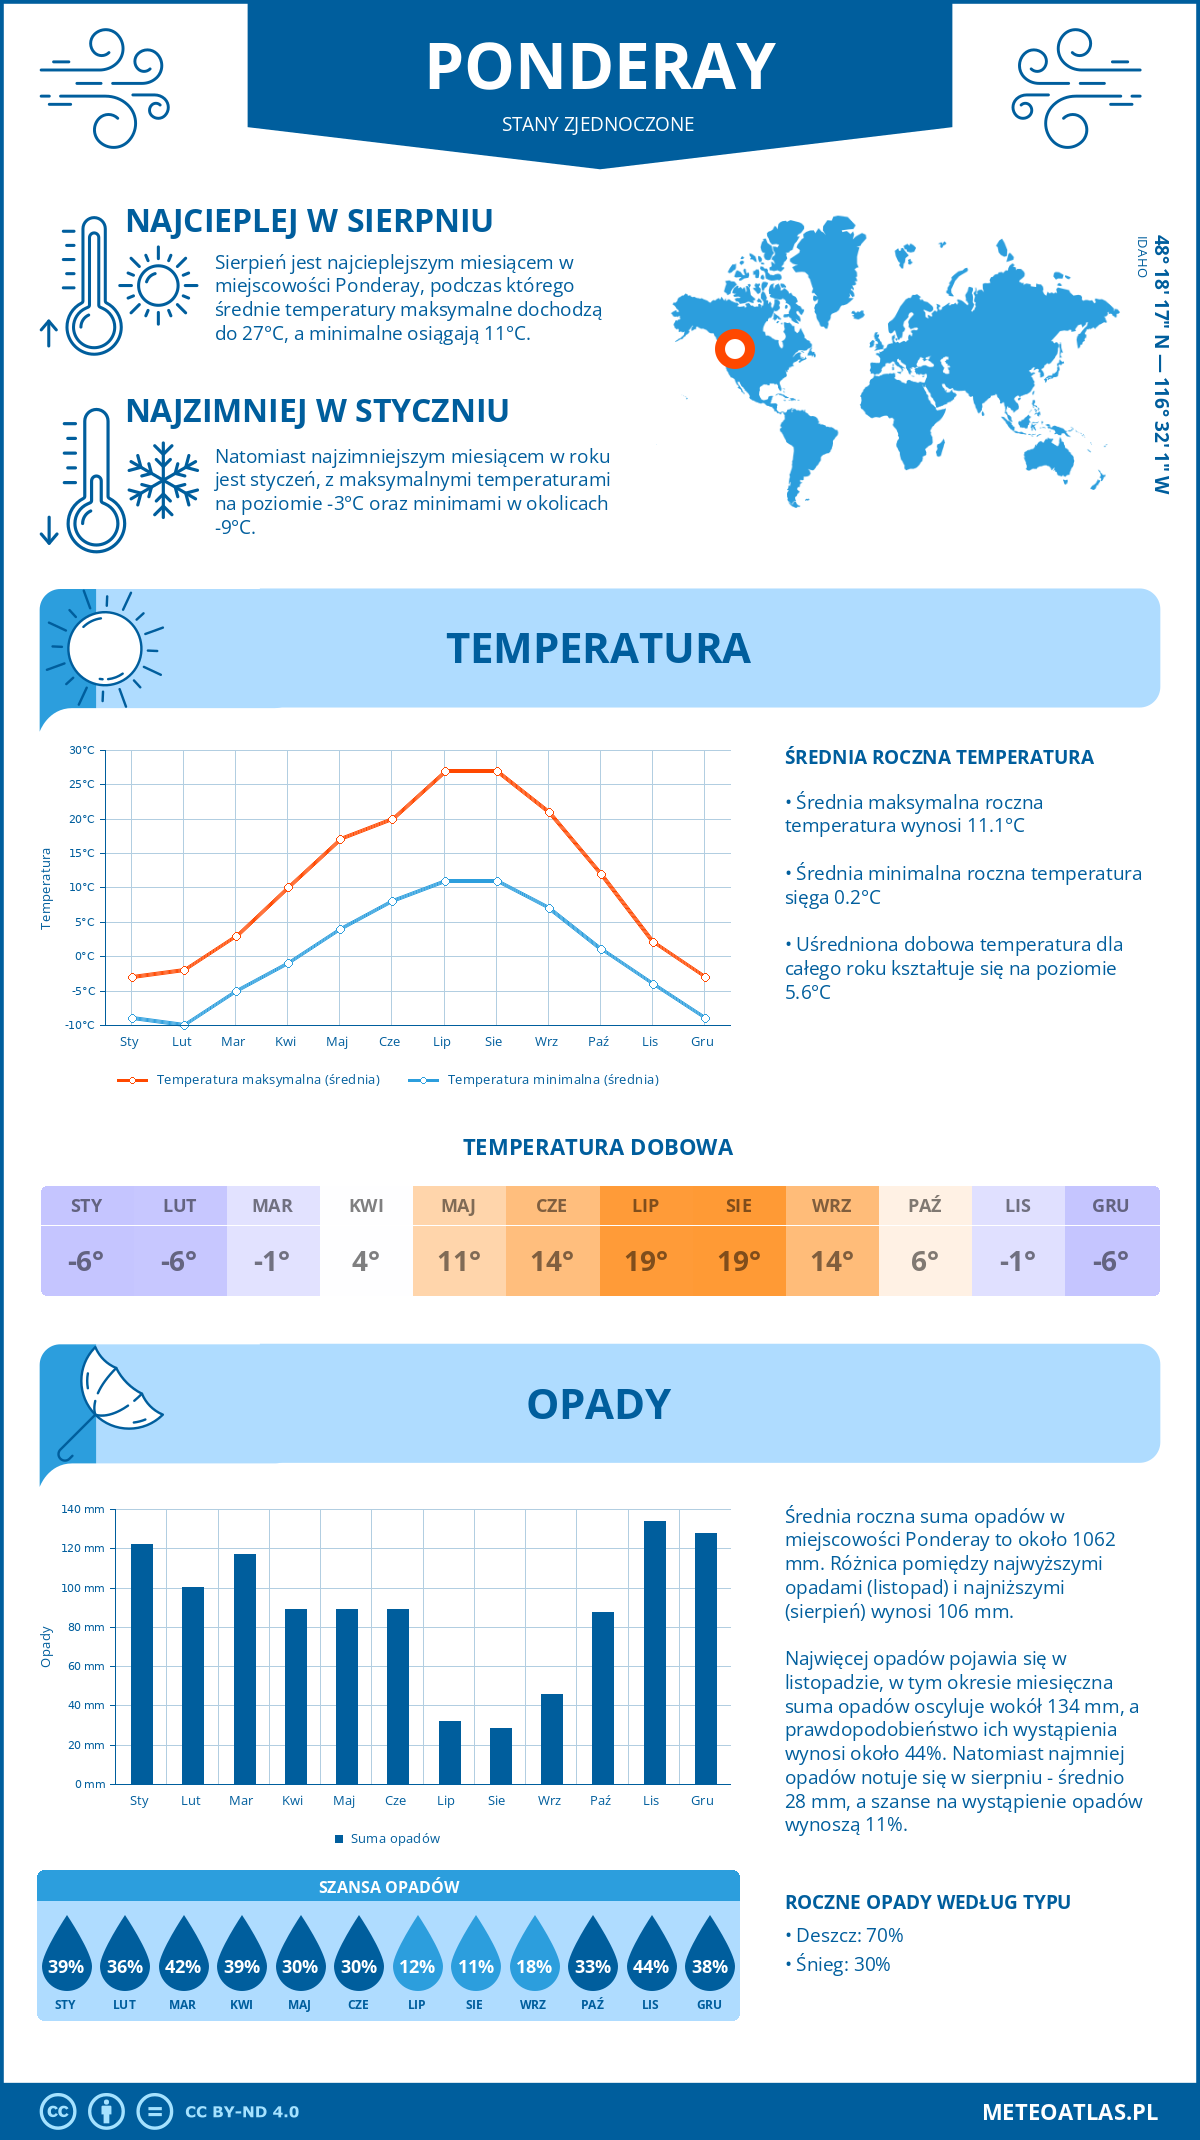 Pogoda Ponderay (Stany Zjednoczone). Temperatura oraz opady.